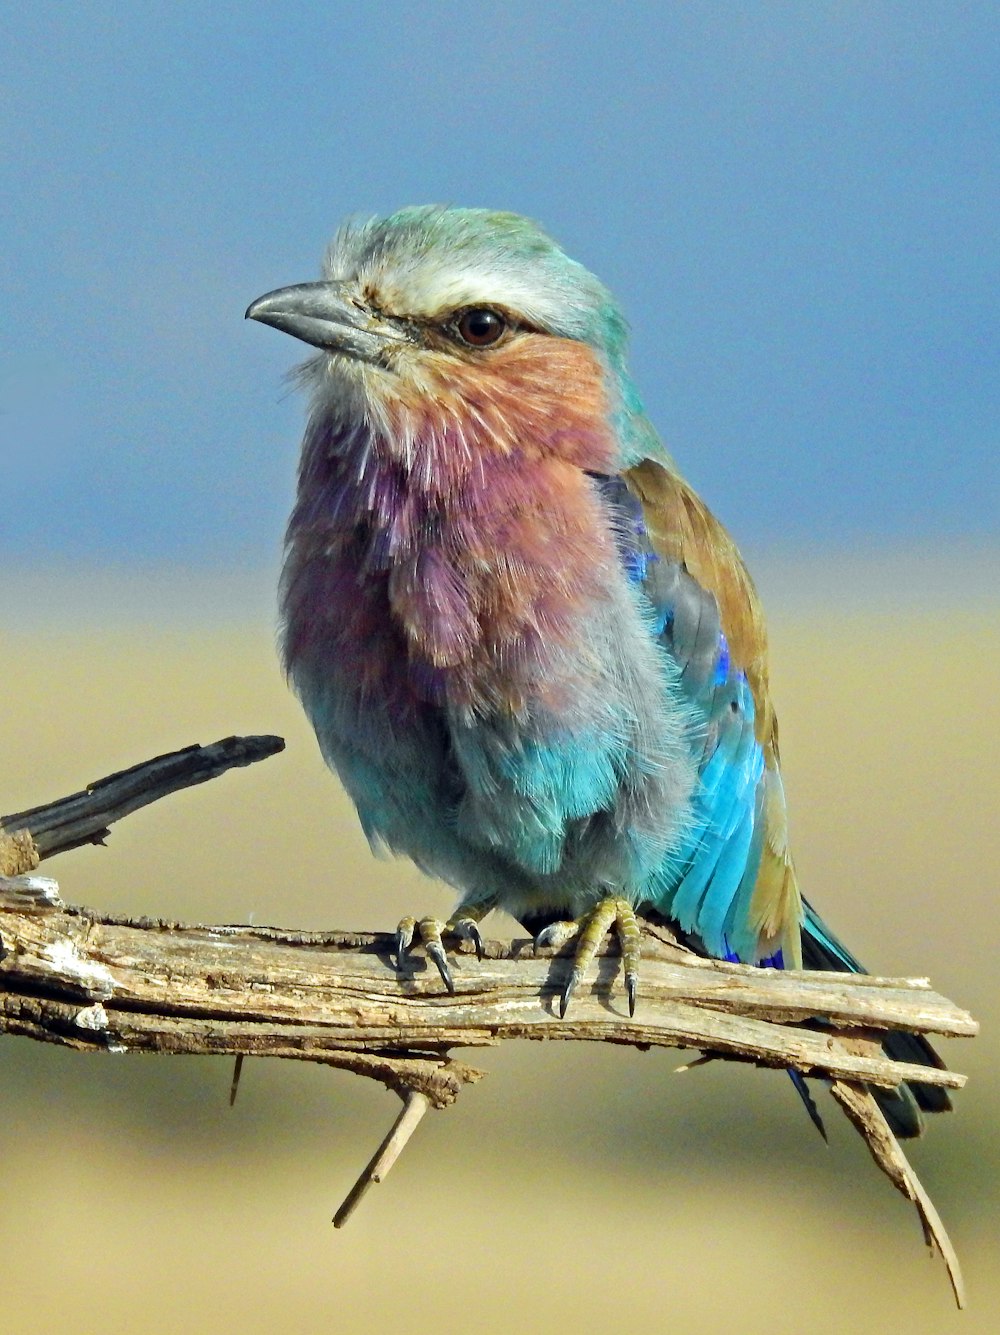 色とりどりの鳥の浅い焦点撮影